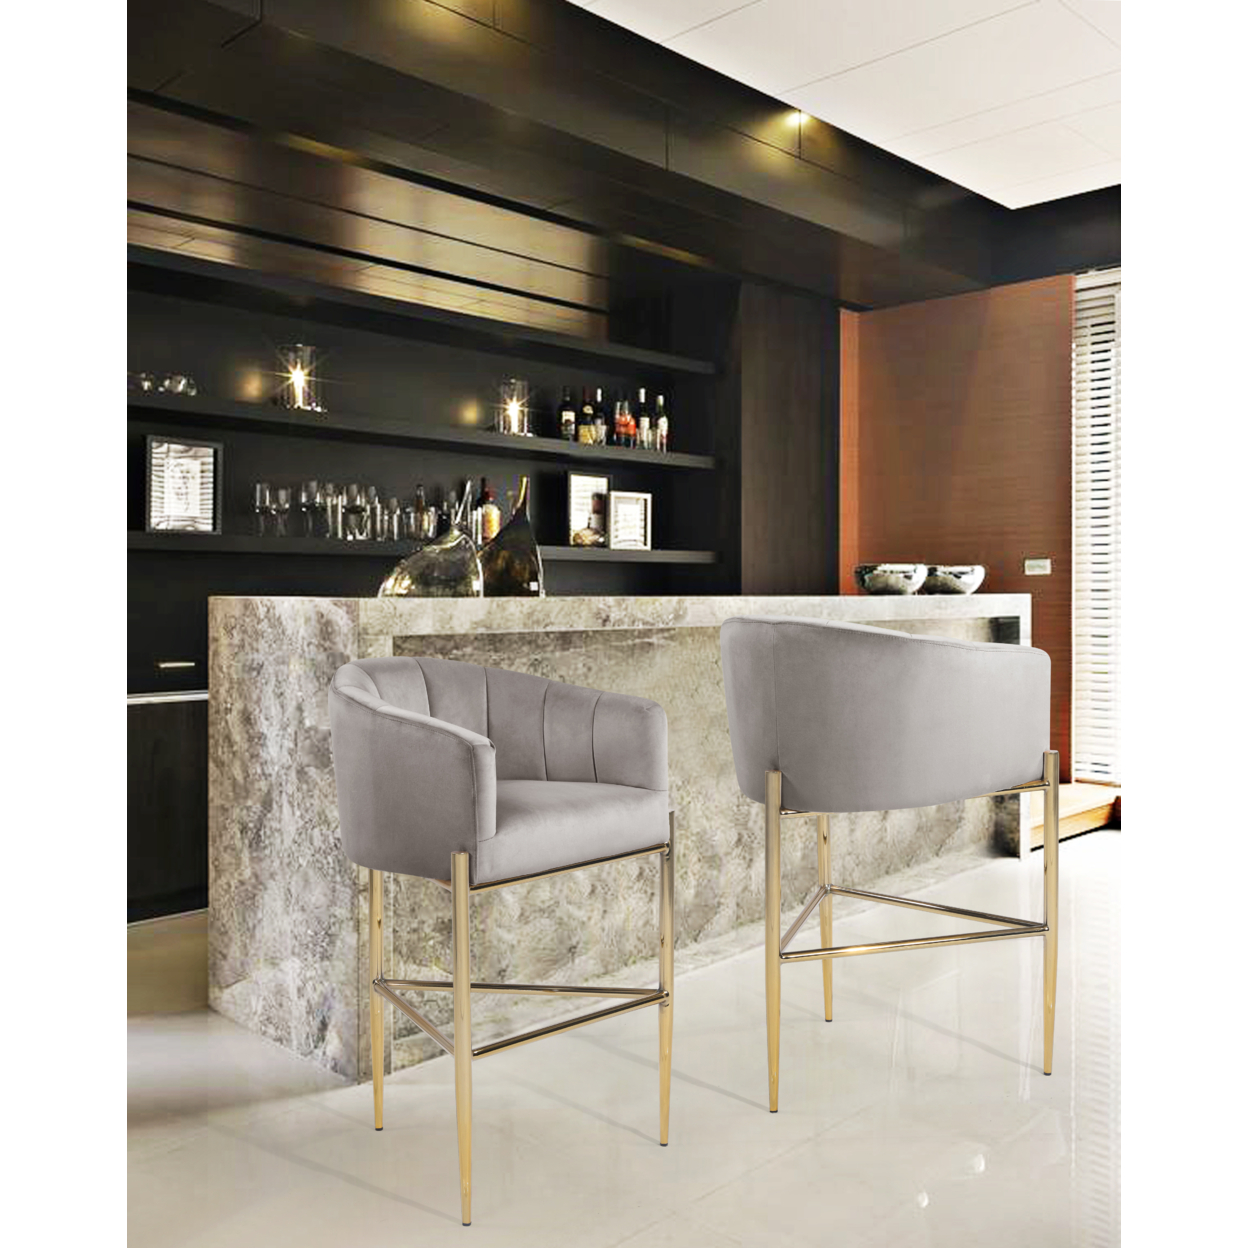 Ardee Bar Stool Chair Velvet Upholstered Shelter Arm Shell Design 3 Legged Gold Tone Solid Metal Base - Green